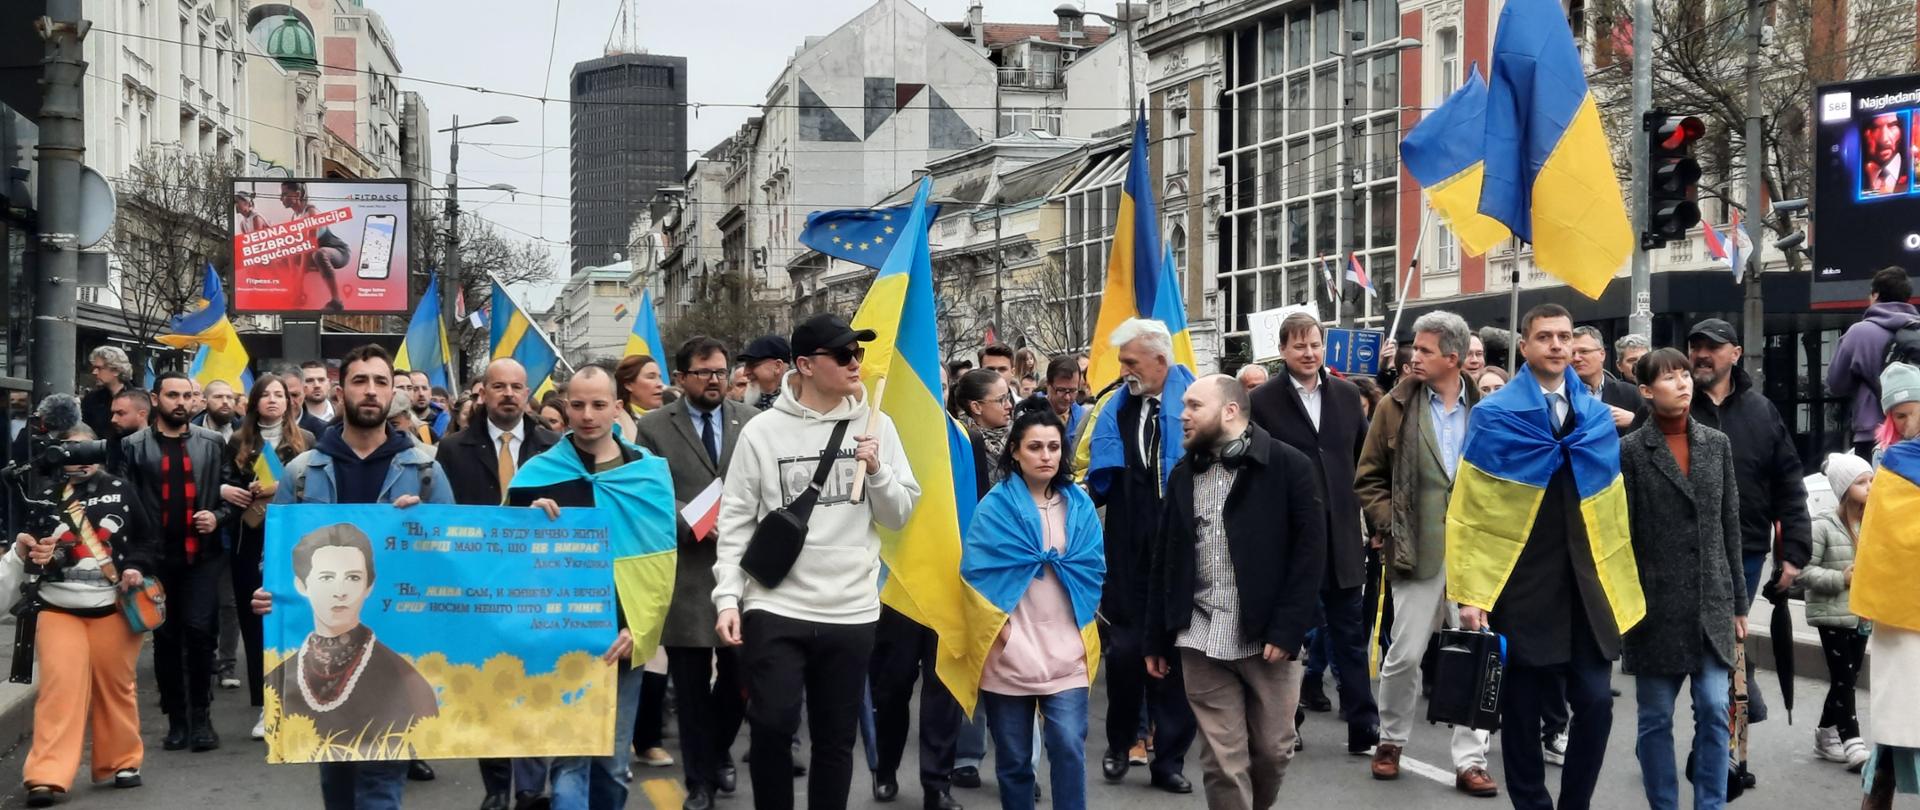 Przedstawiciele ambasady na czele z Ambasadorem RP uczestniczyli wraz z innymi reprezentantami korpusu dyplomatycznego, miejscowymi środowiskami ukraińskimi oraz grupą mieszkańców Belgradu w marszu poparcia dla walczącej Ukrainy